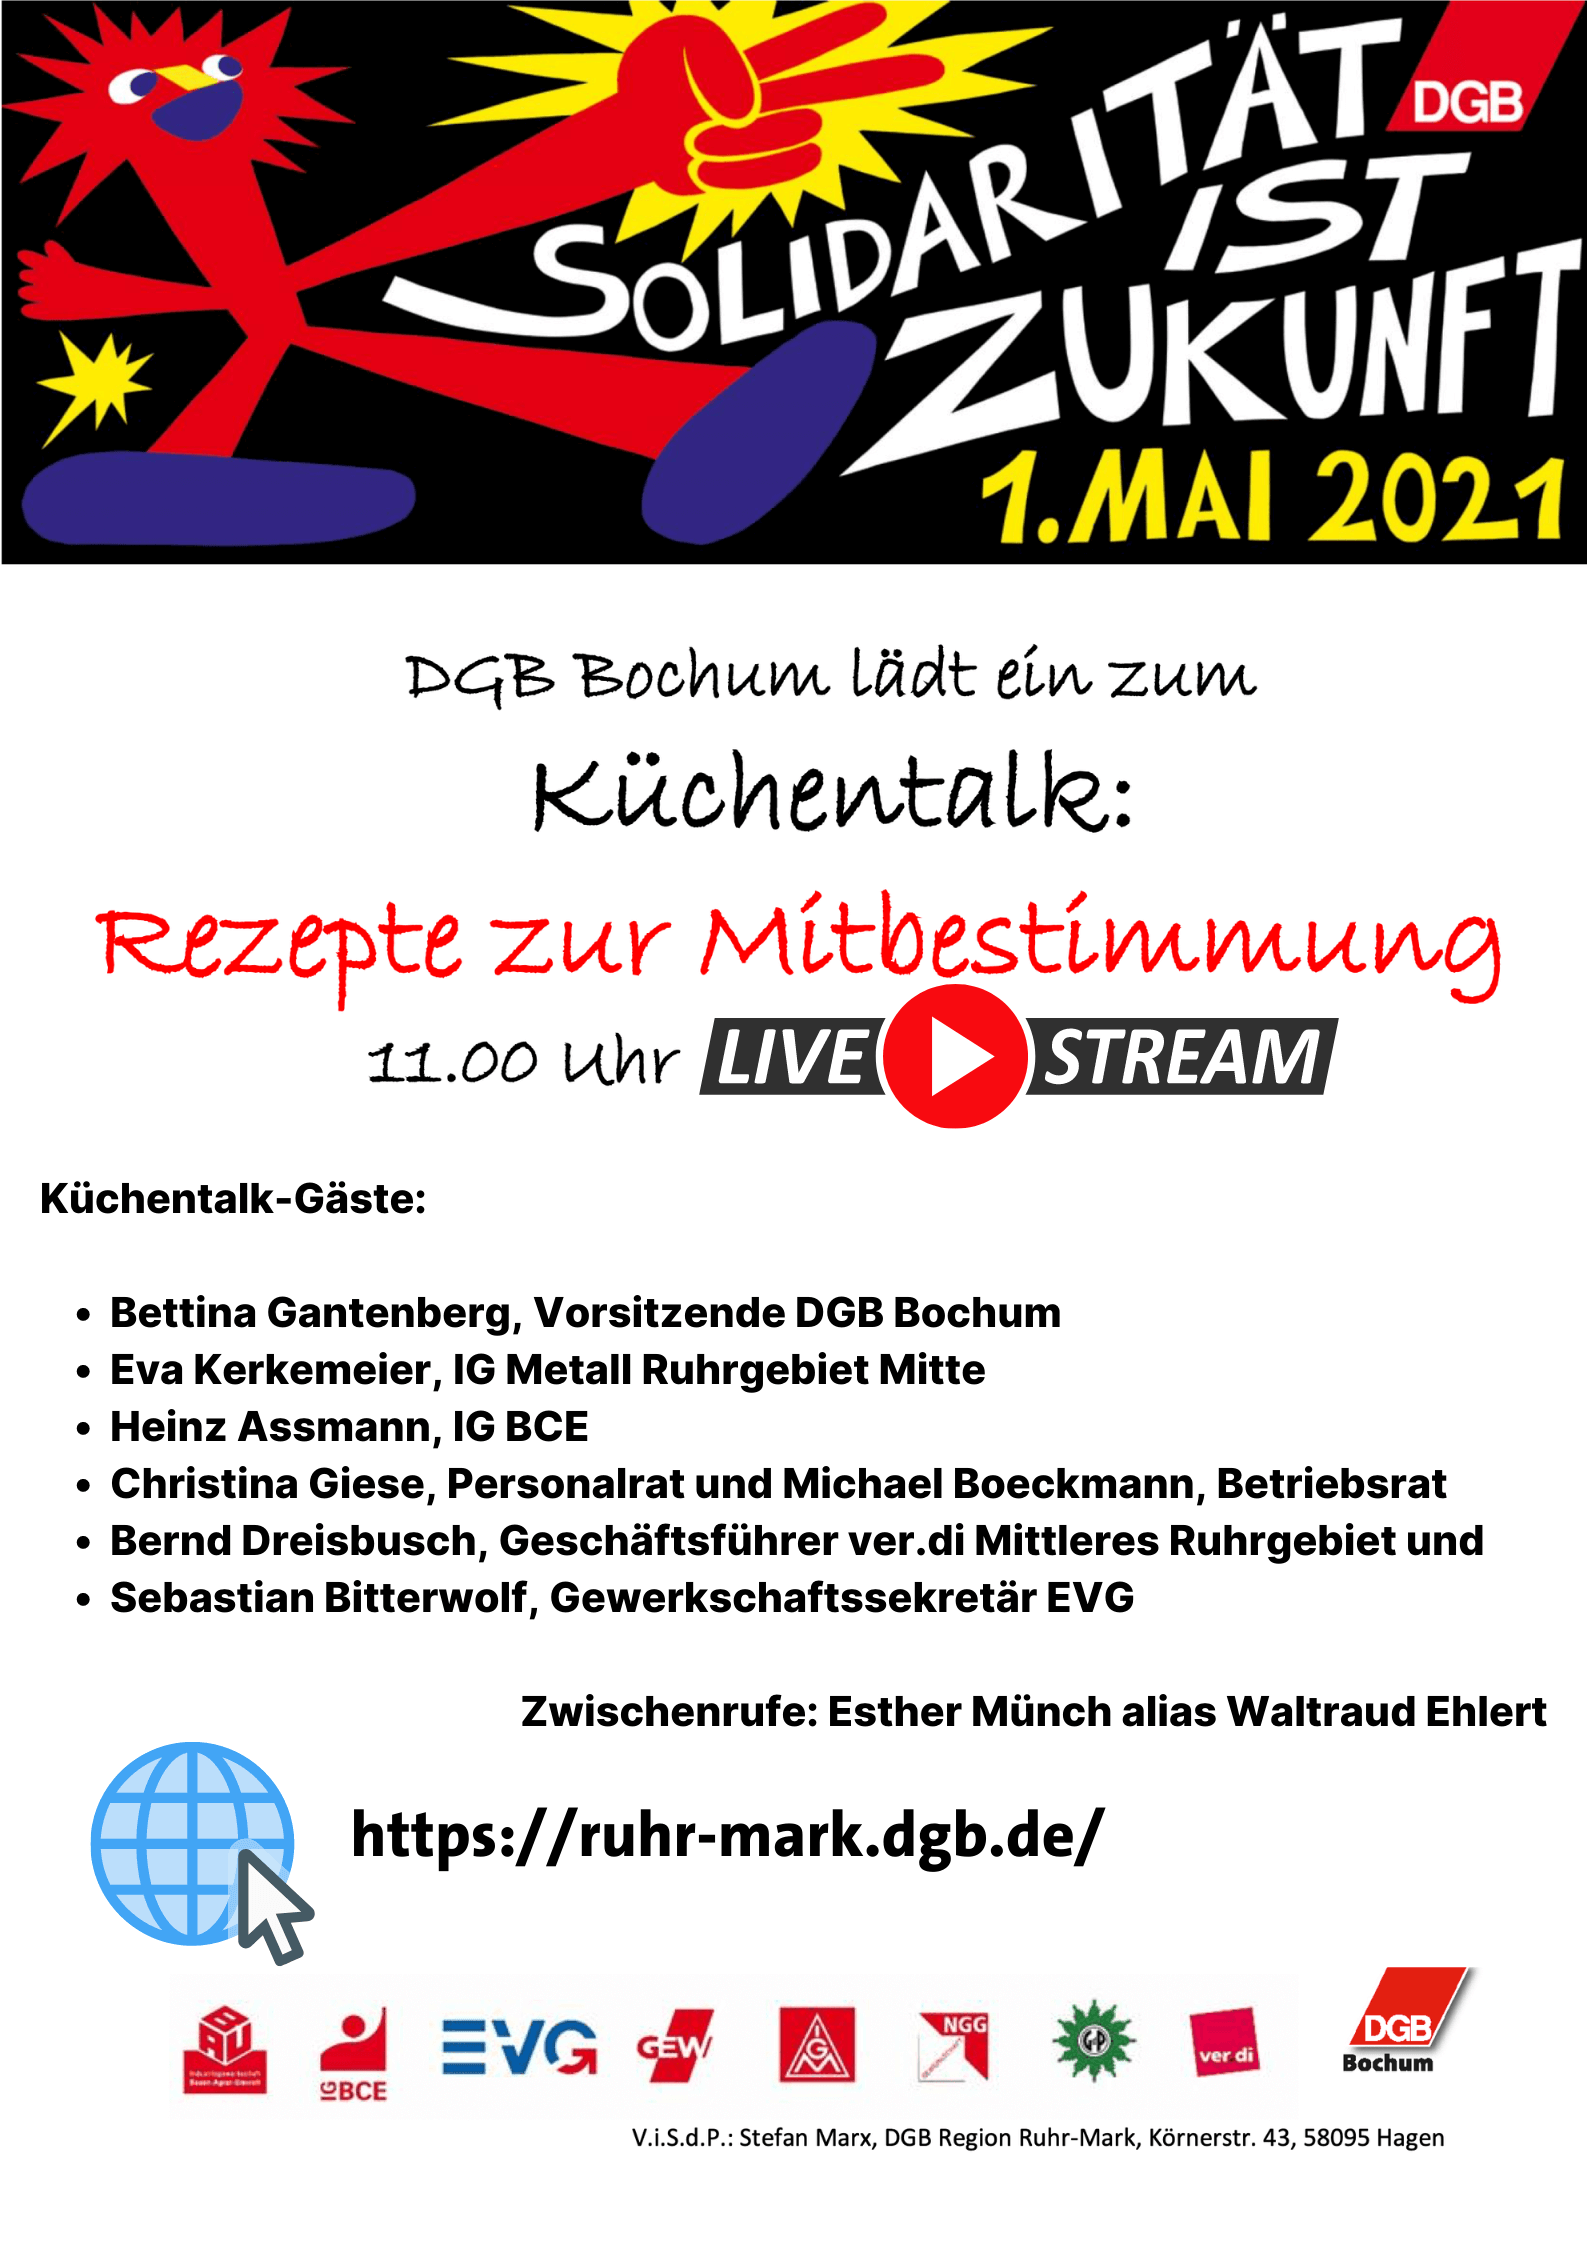 1. Mai 2021 - #SolidaritätIstZukunft - DGB in Bochum lädt ein zum Küchentalk: Rezepte zur Mitbestimmung